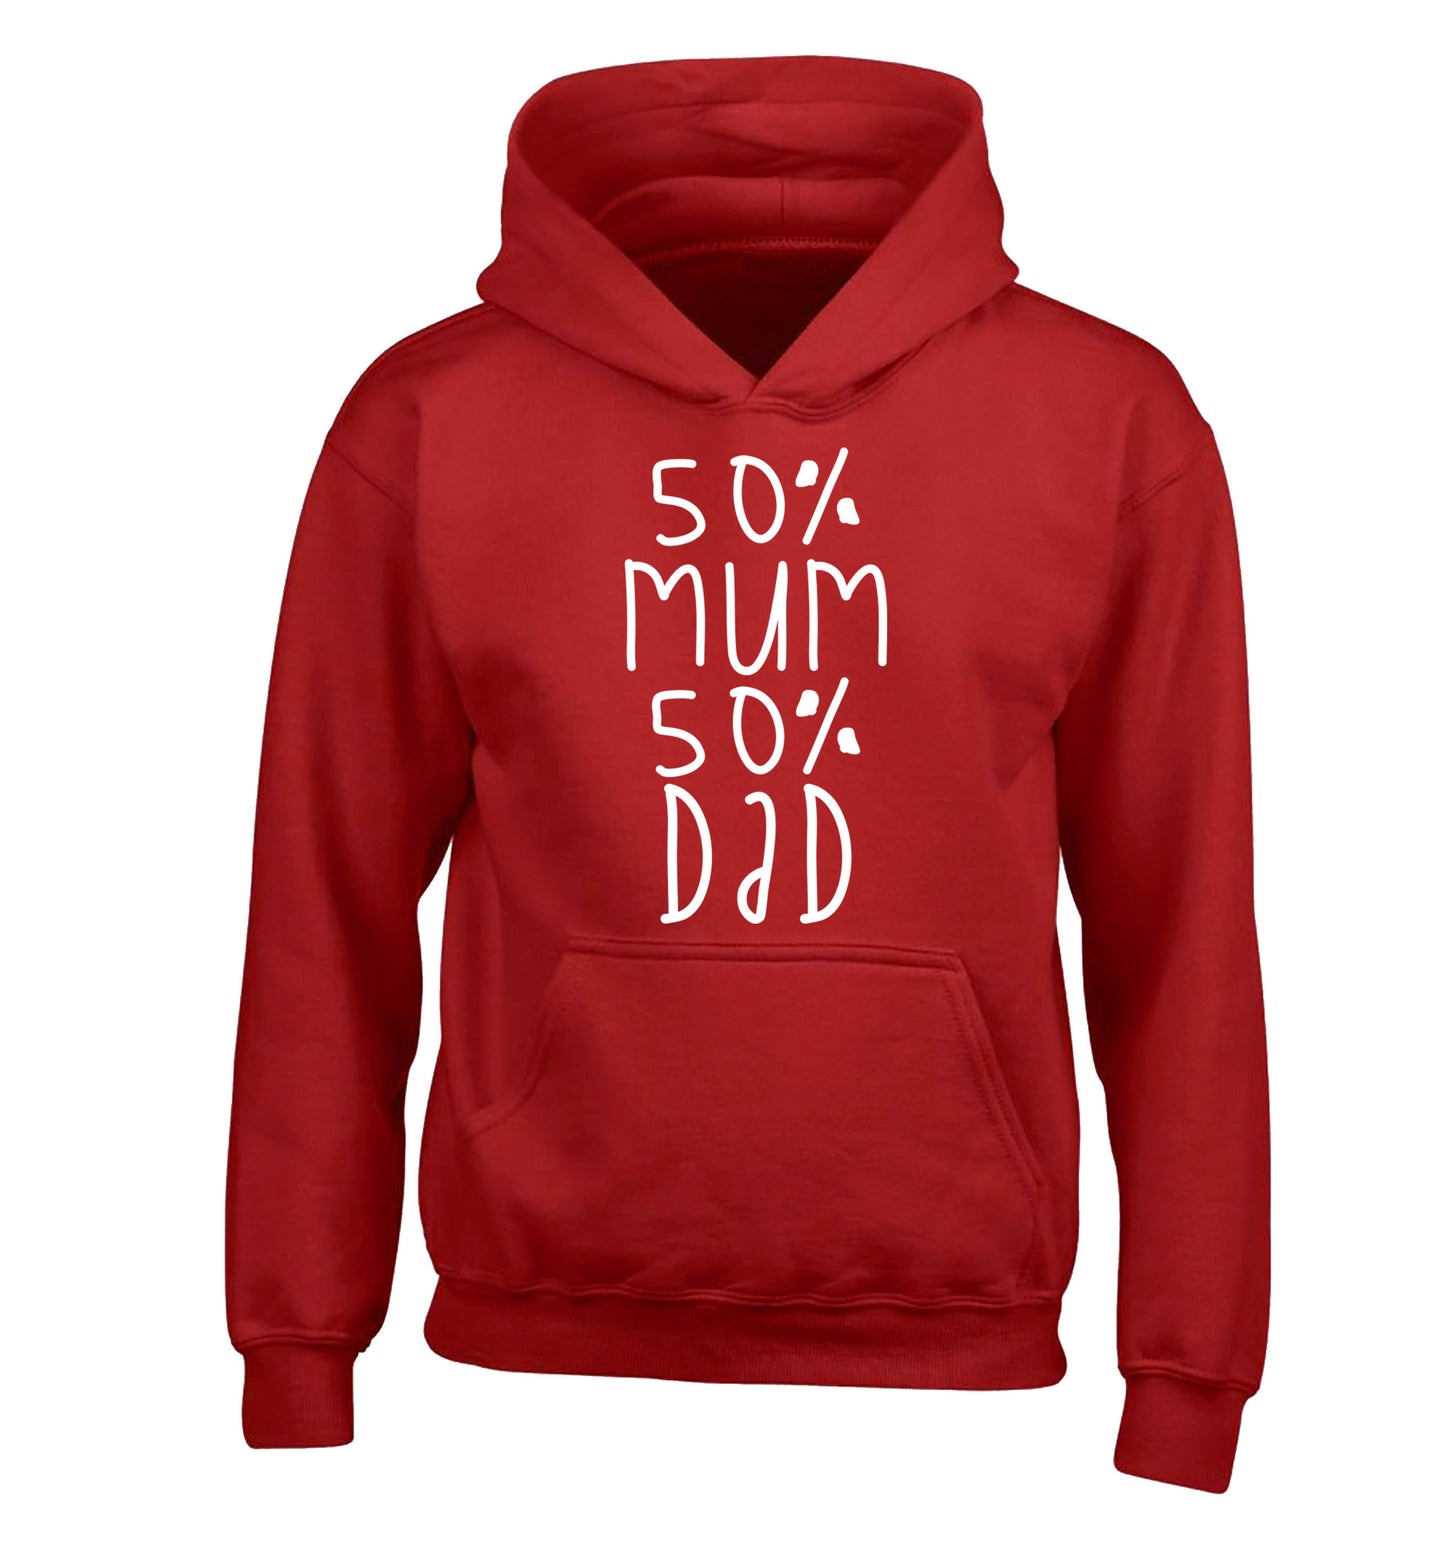 50% mum 50% dad children's red hoodie 12-14 Years